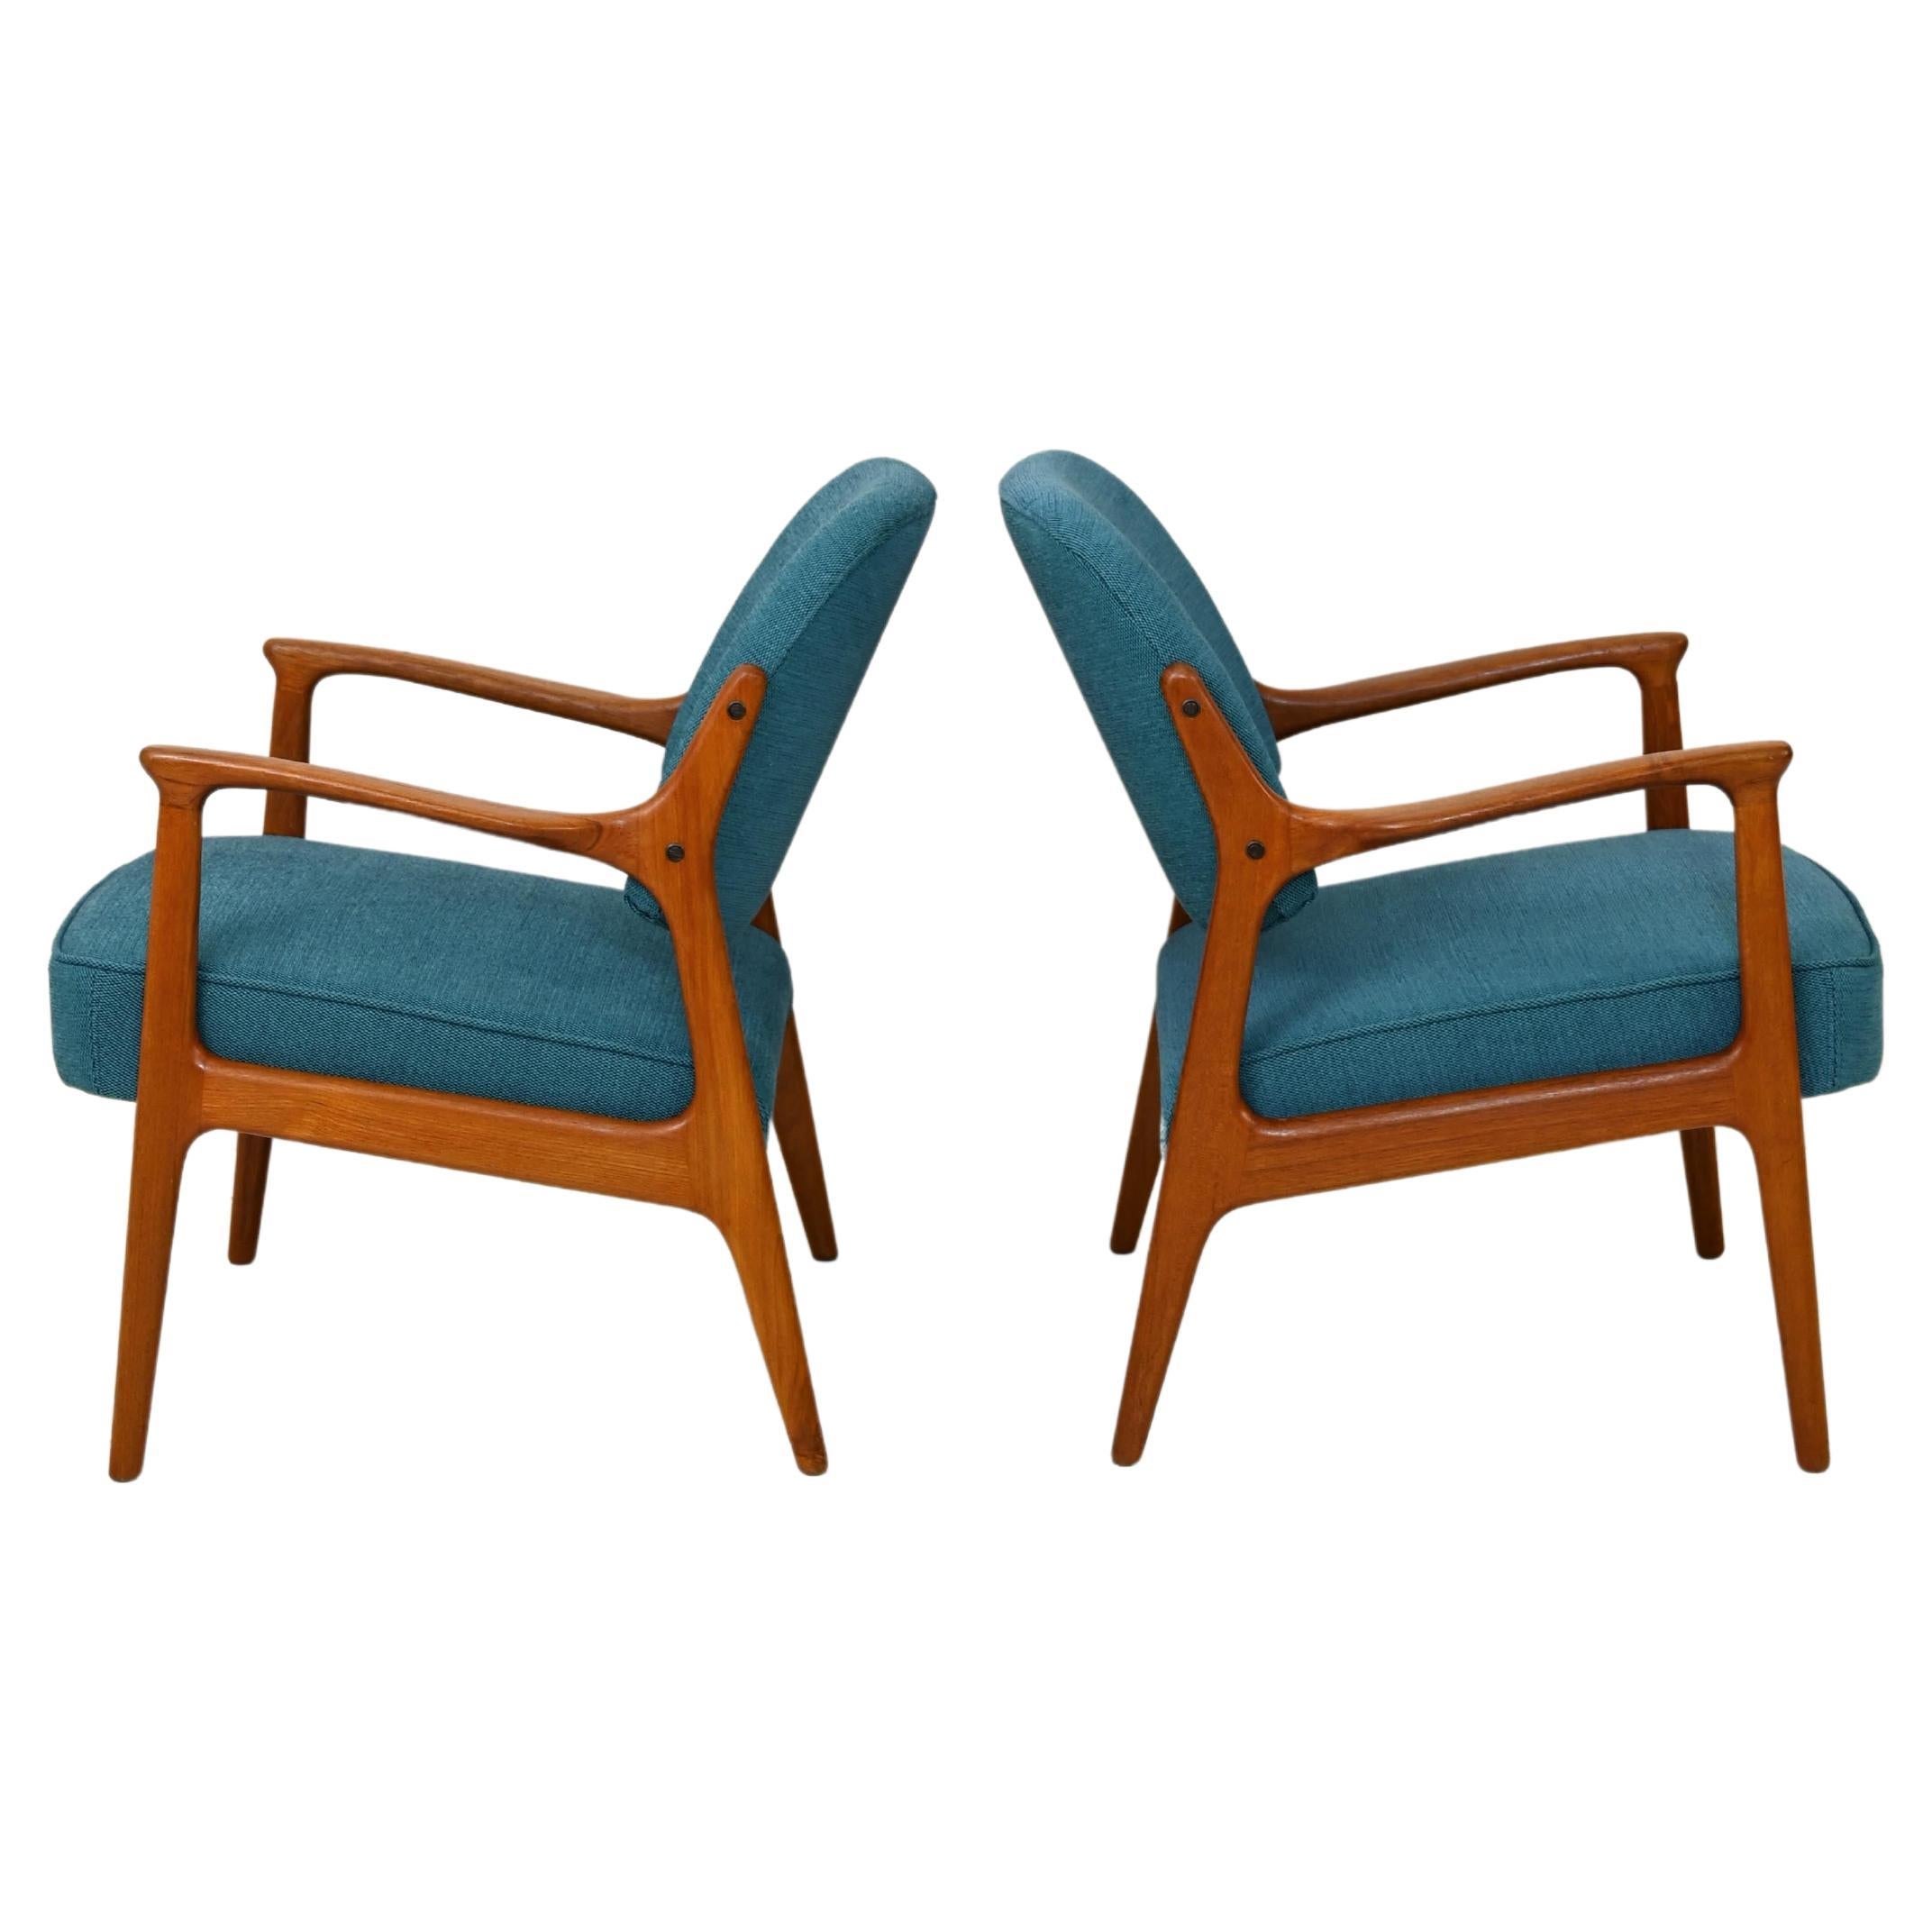 Pair of Original Vintage Scandinavian Armchairs Reupholstered